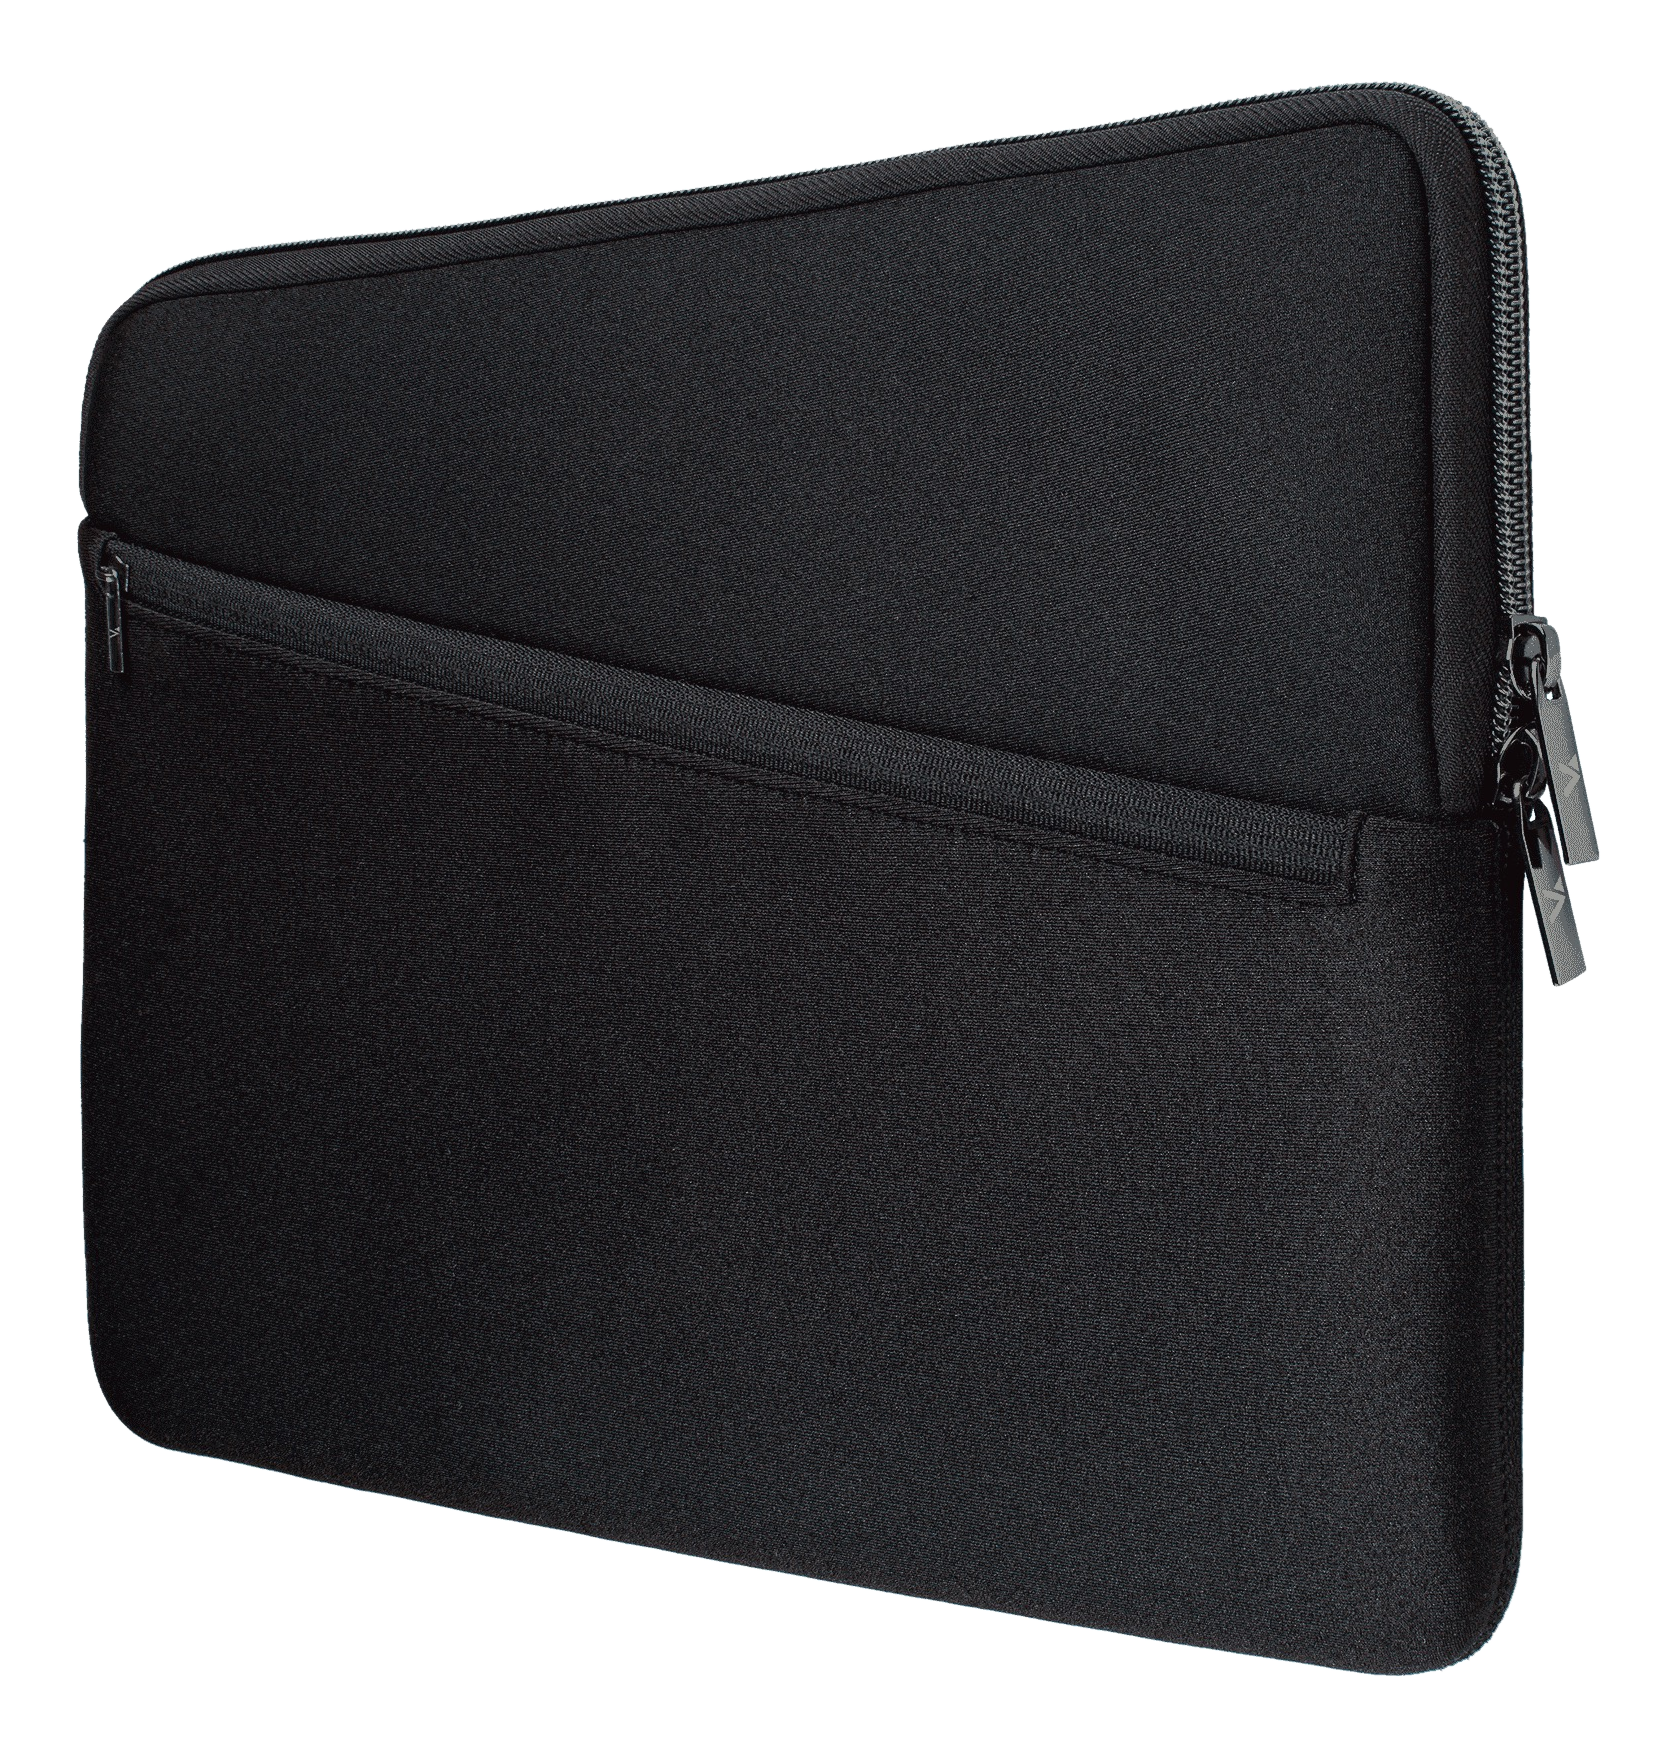 ARTWIZZ Neopren Sleeve Pro - Custodia notebook, Macbook, universale, 14 "/36.87 cm, Nero